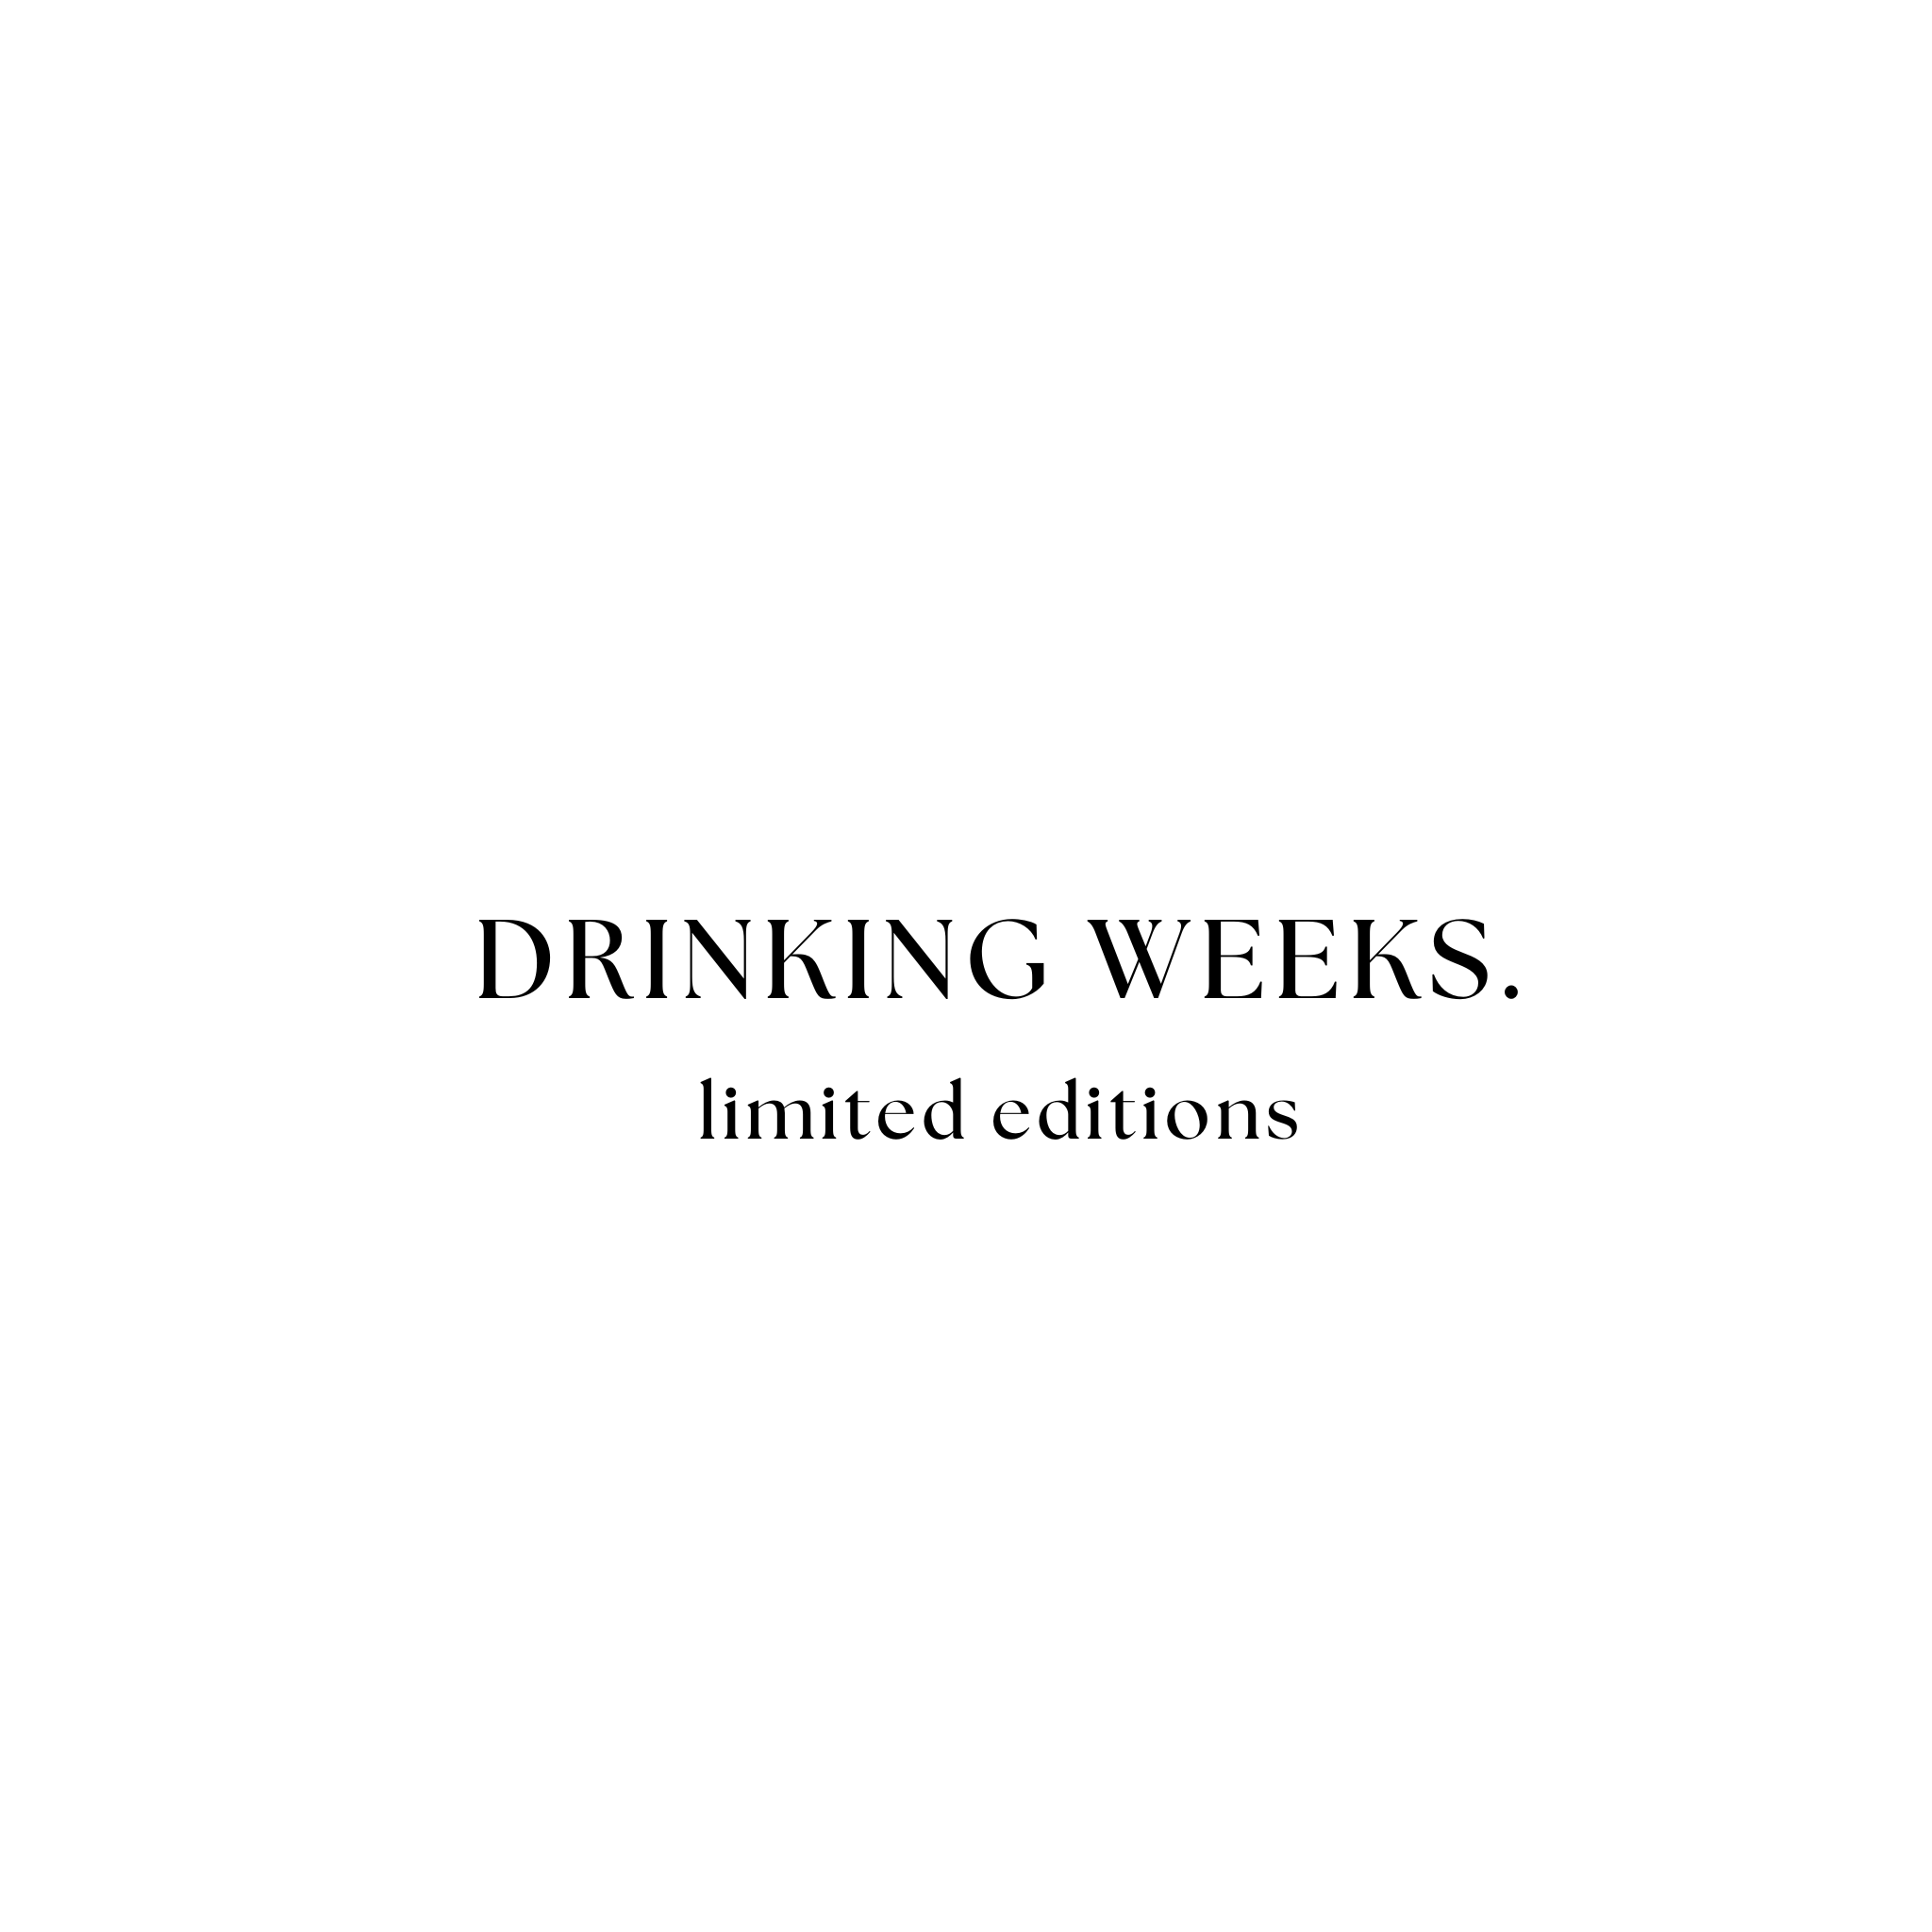 DRINKING WEEKS